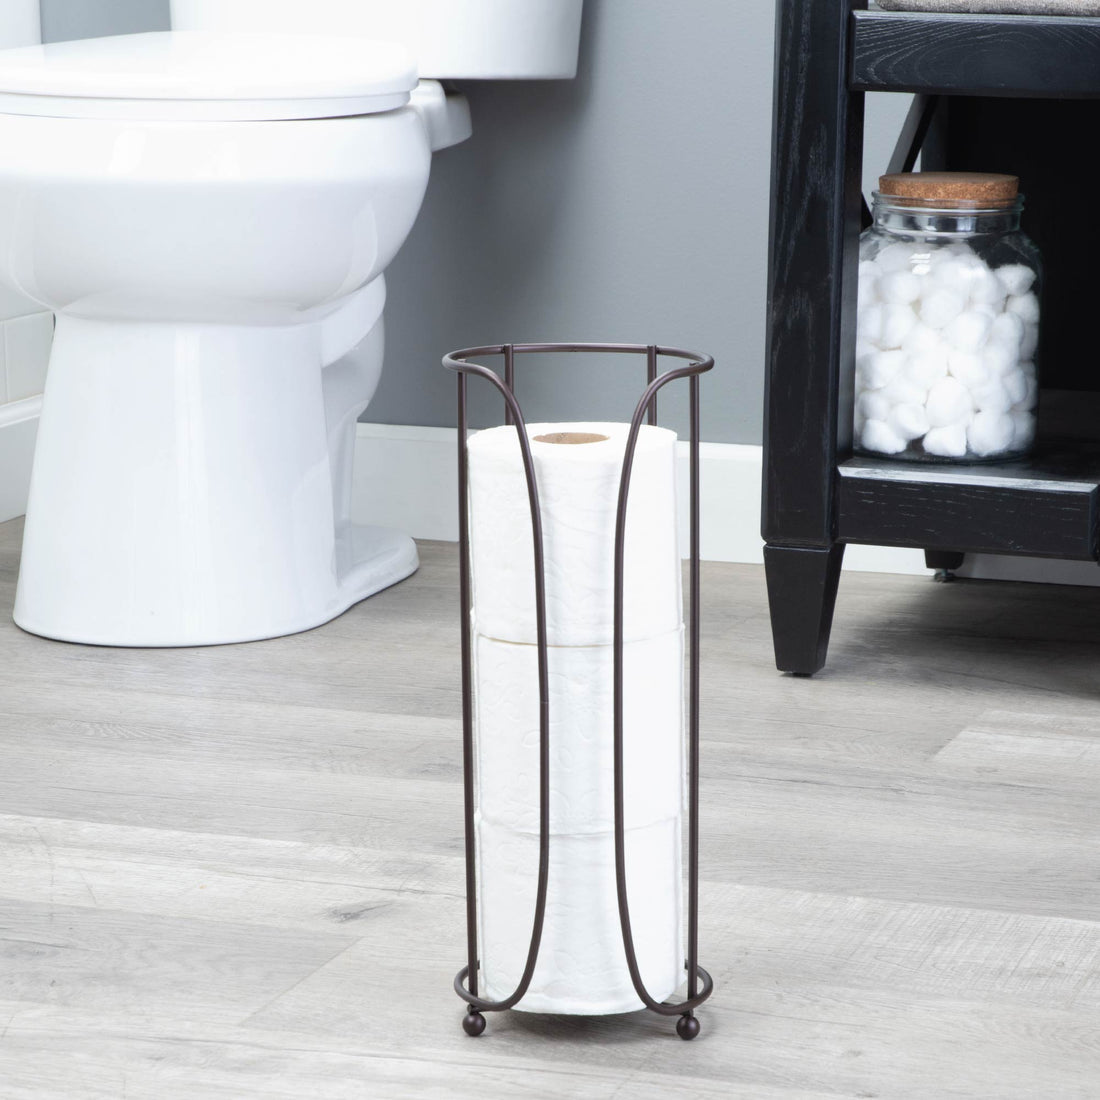 Freestanding Toilet Paper Holder for Standard Rolls (Oil-Rubbed Bronze Finish) - Utility sinks vanites Tehila